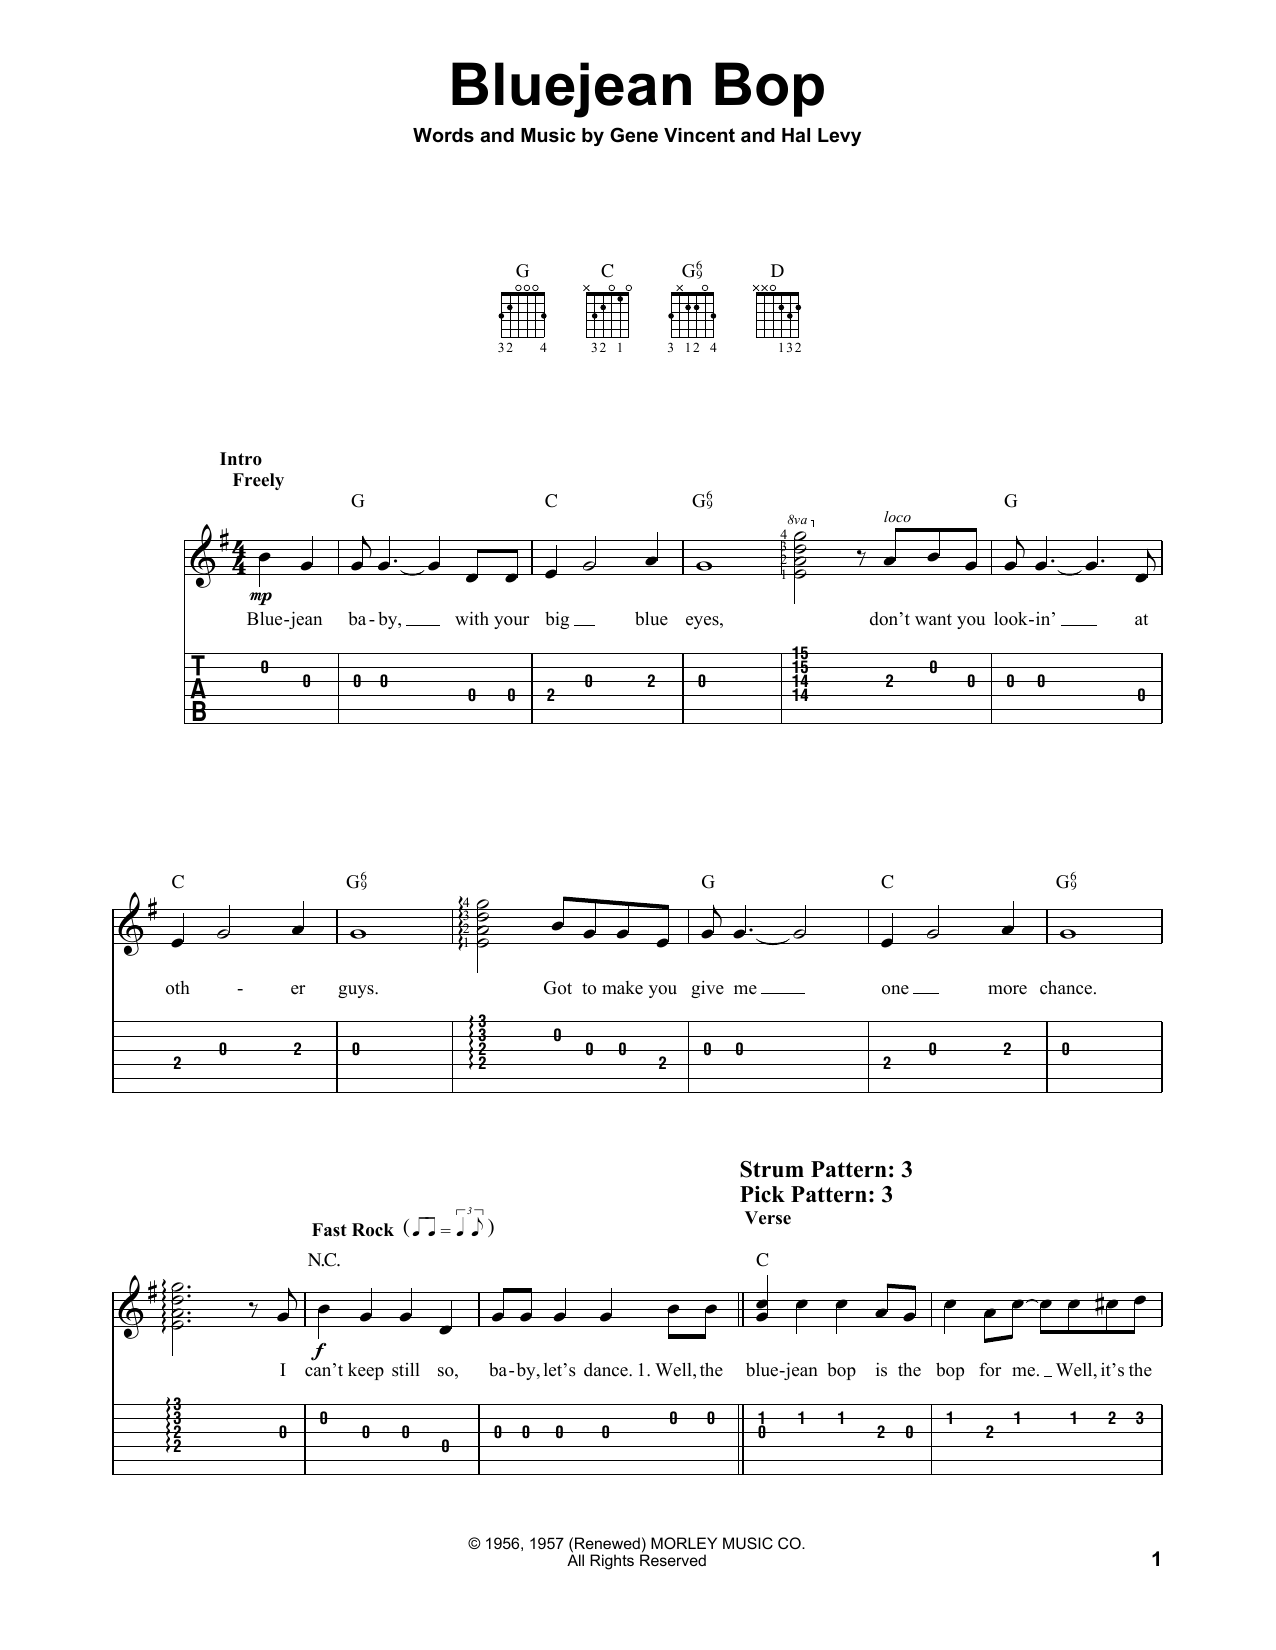 Gene Vincent Bluejean Bop Sheet Music Notes & Chords for Guitar Tab - Download or Print PDF